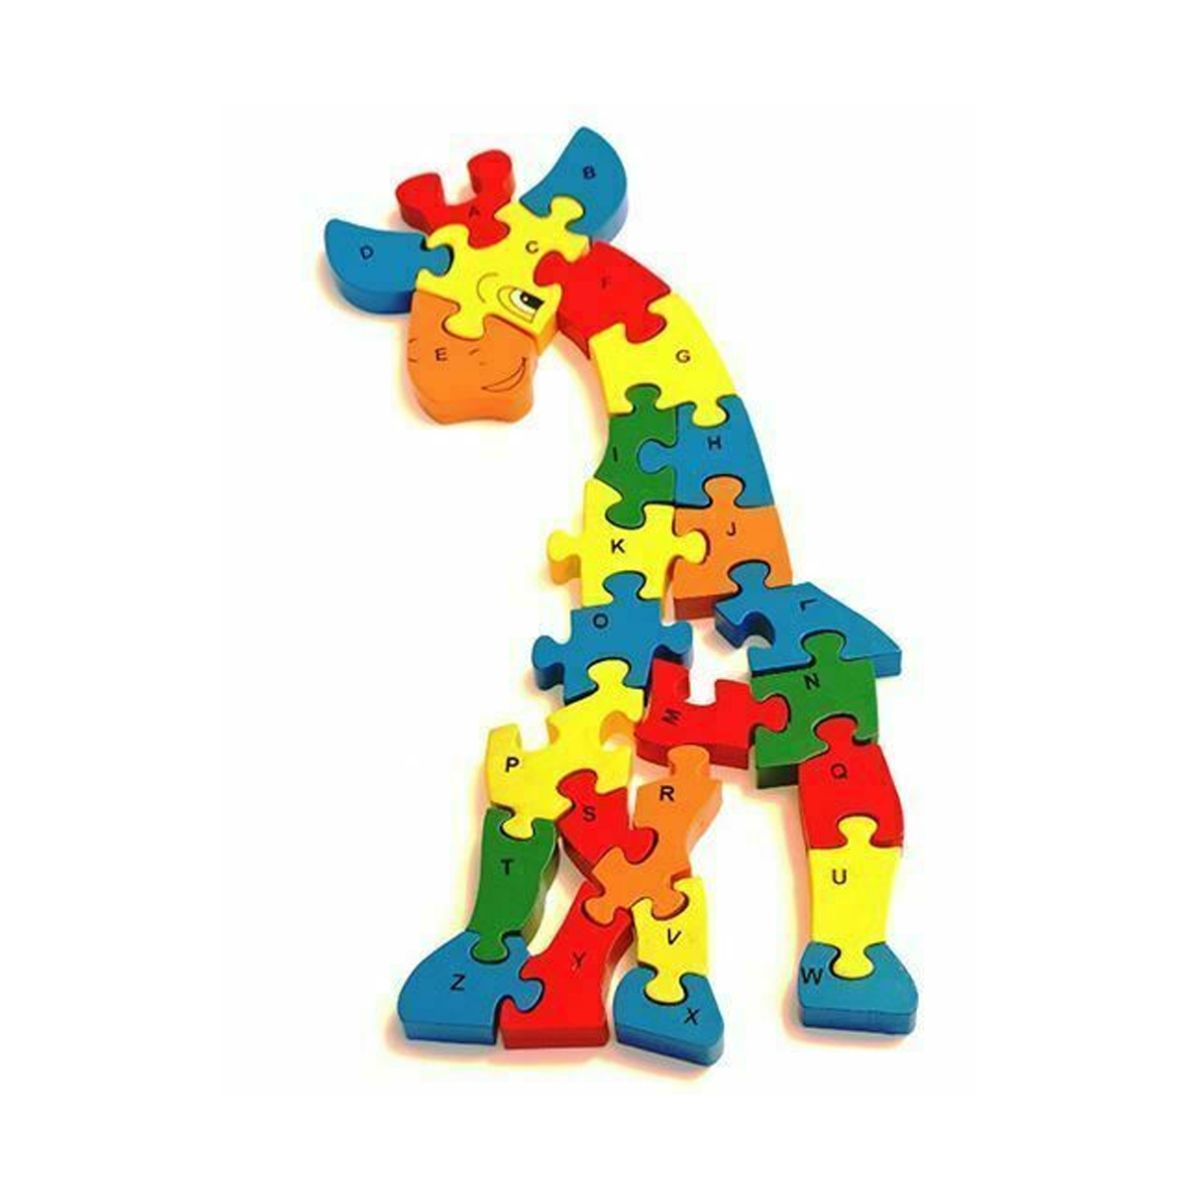 Jucarii interior - Puzzle 3D din lemn, girafa, 26 piese, cu litere si cifre, WD 4506-B, hectarul.ro